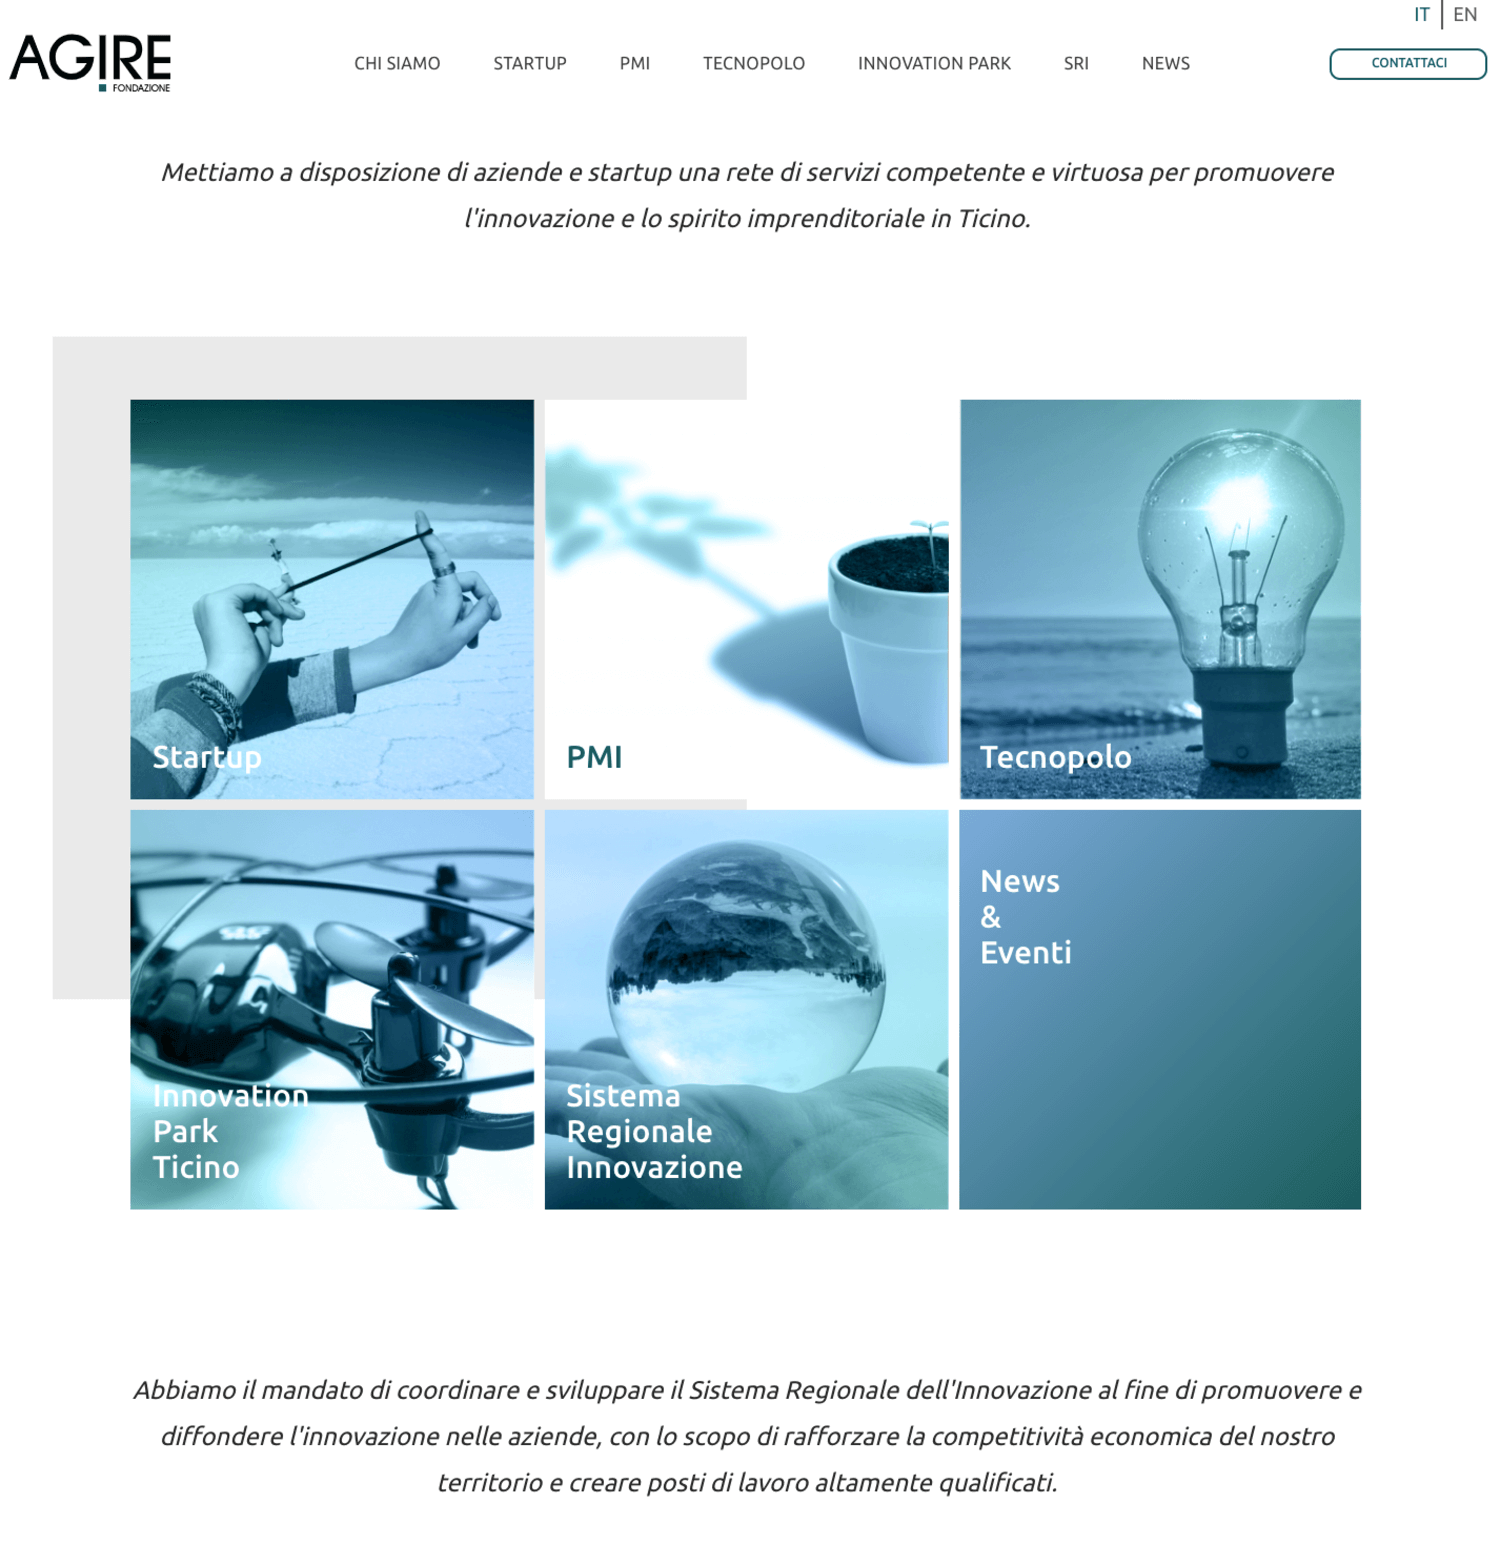 La Fondazione Agire rinnova la sua immagine e lancia un nuovo sito internet con funzionalità accresciute